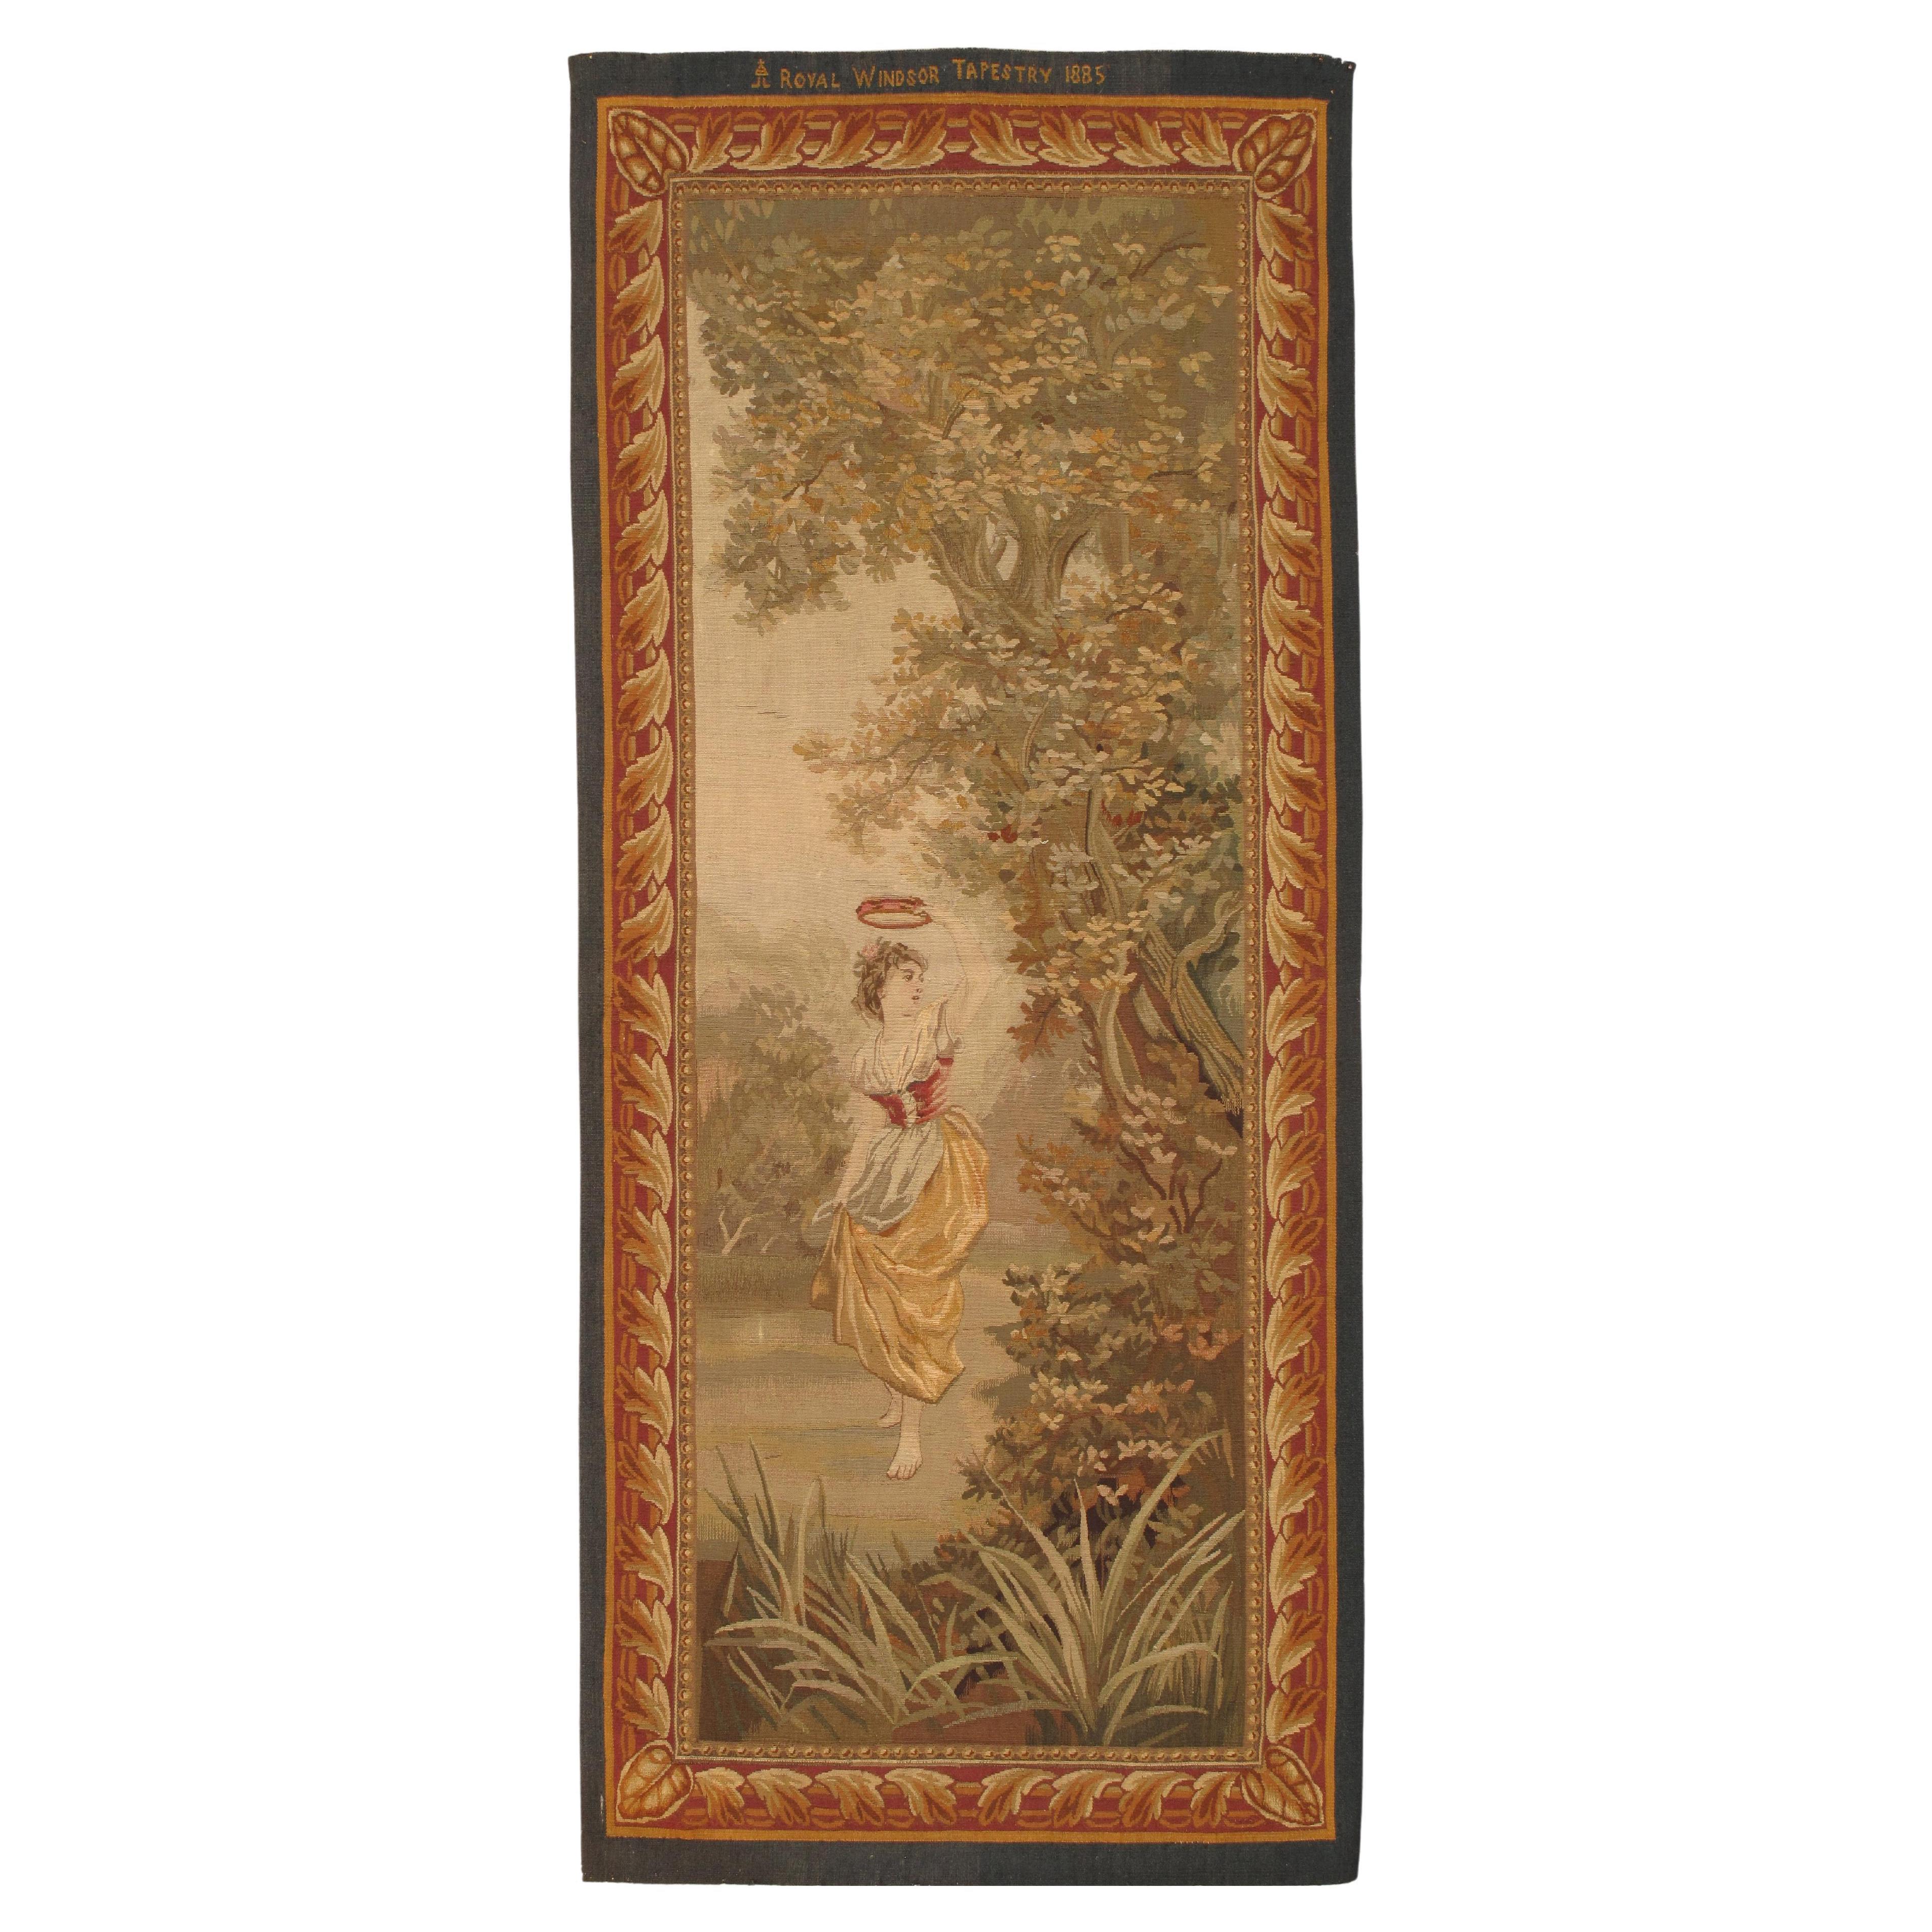 Tapisserie française d'Aubusson du 19ème siècle, finement tissée, femme nue, couleurs douces